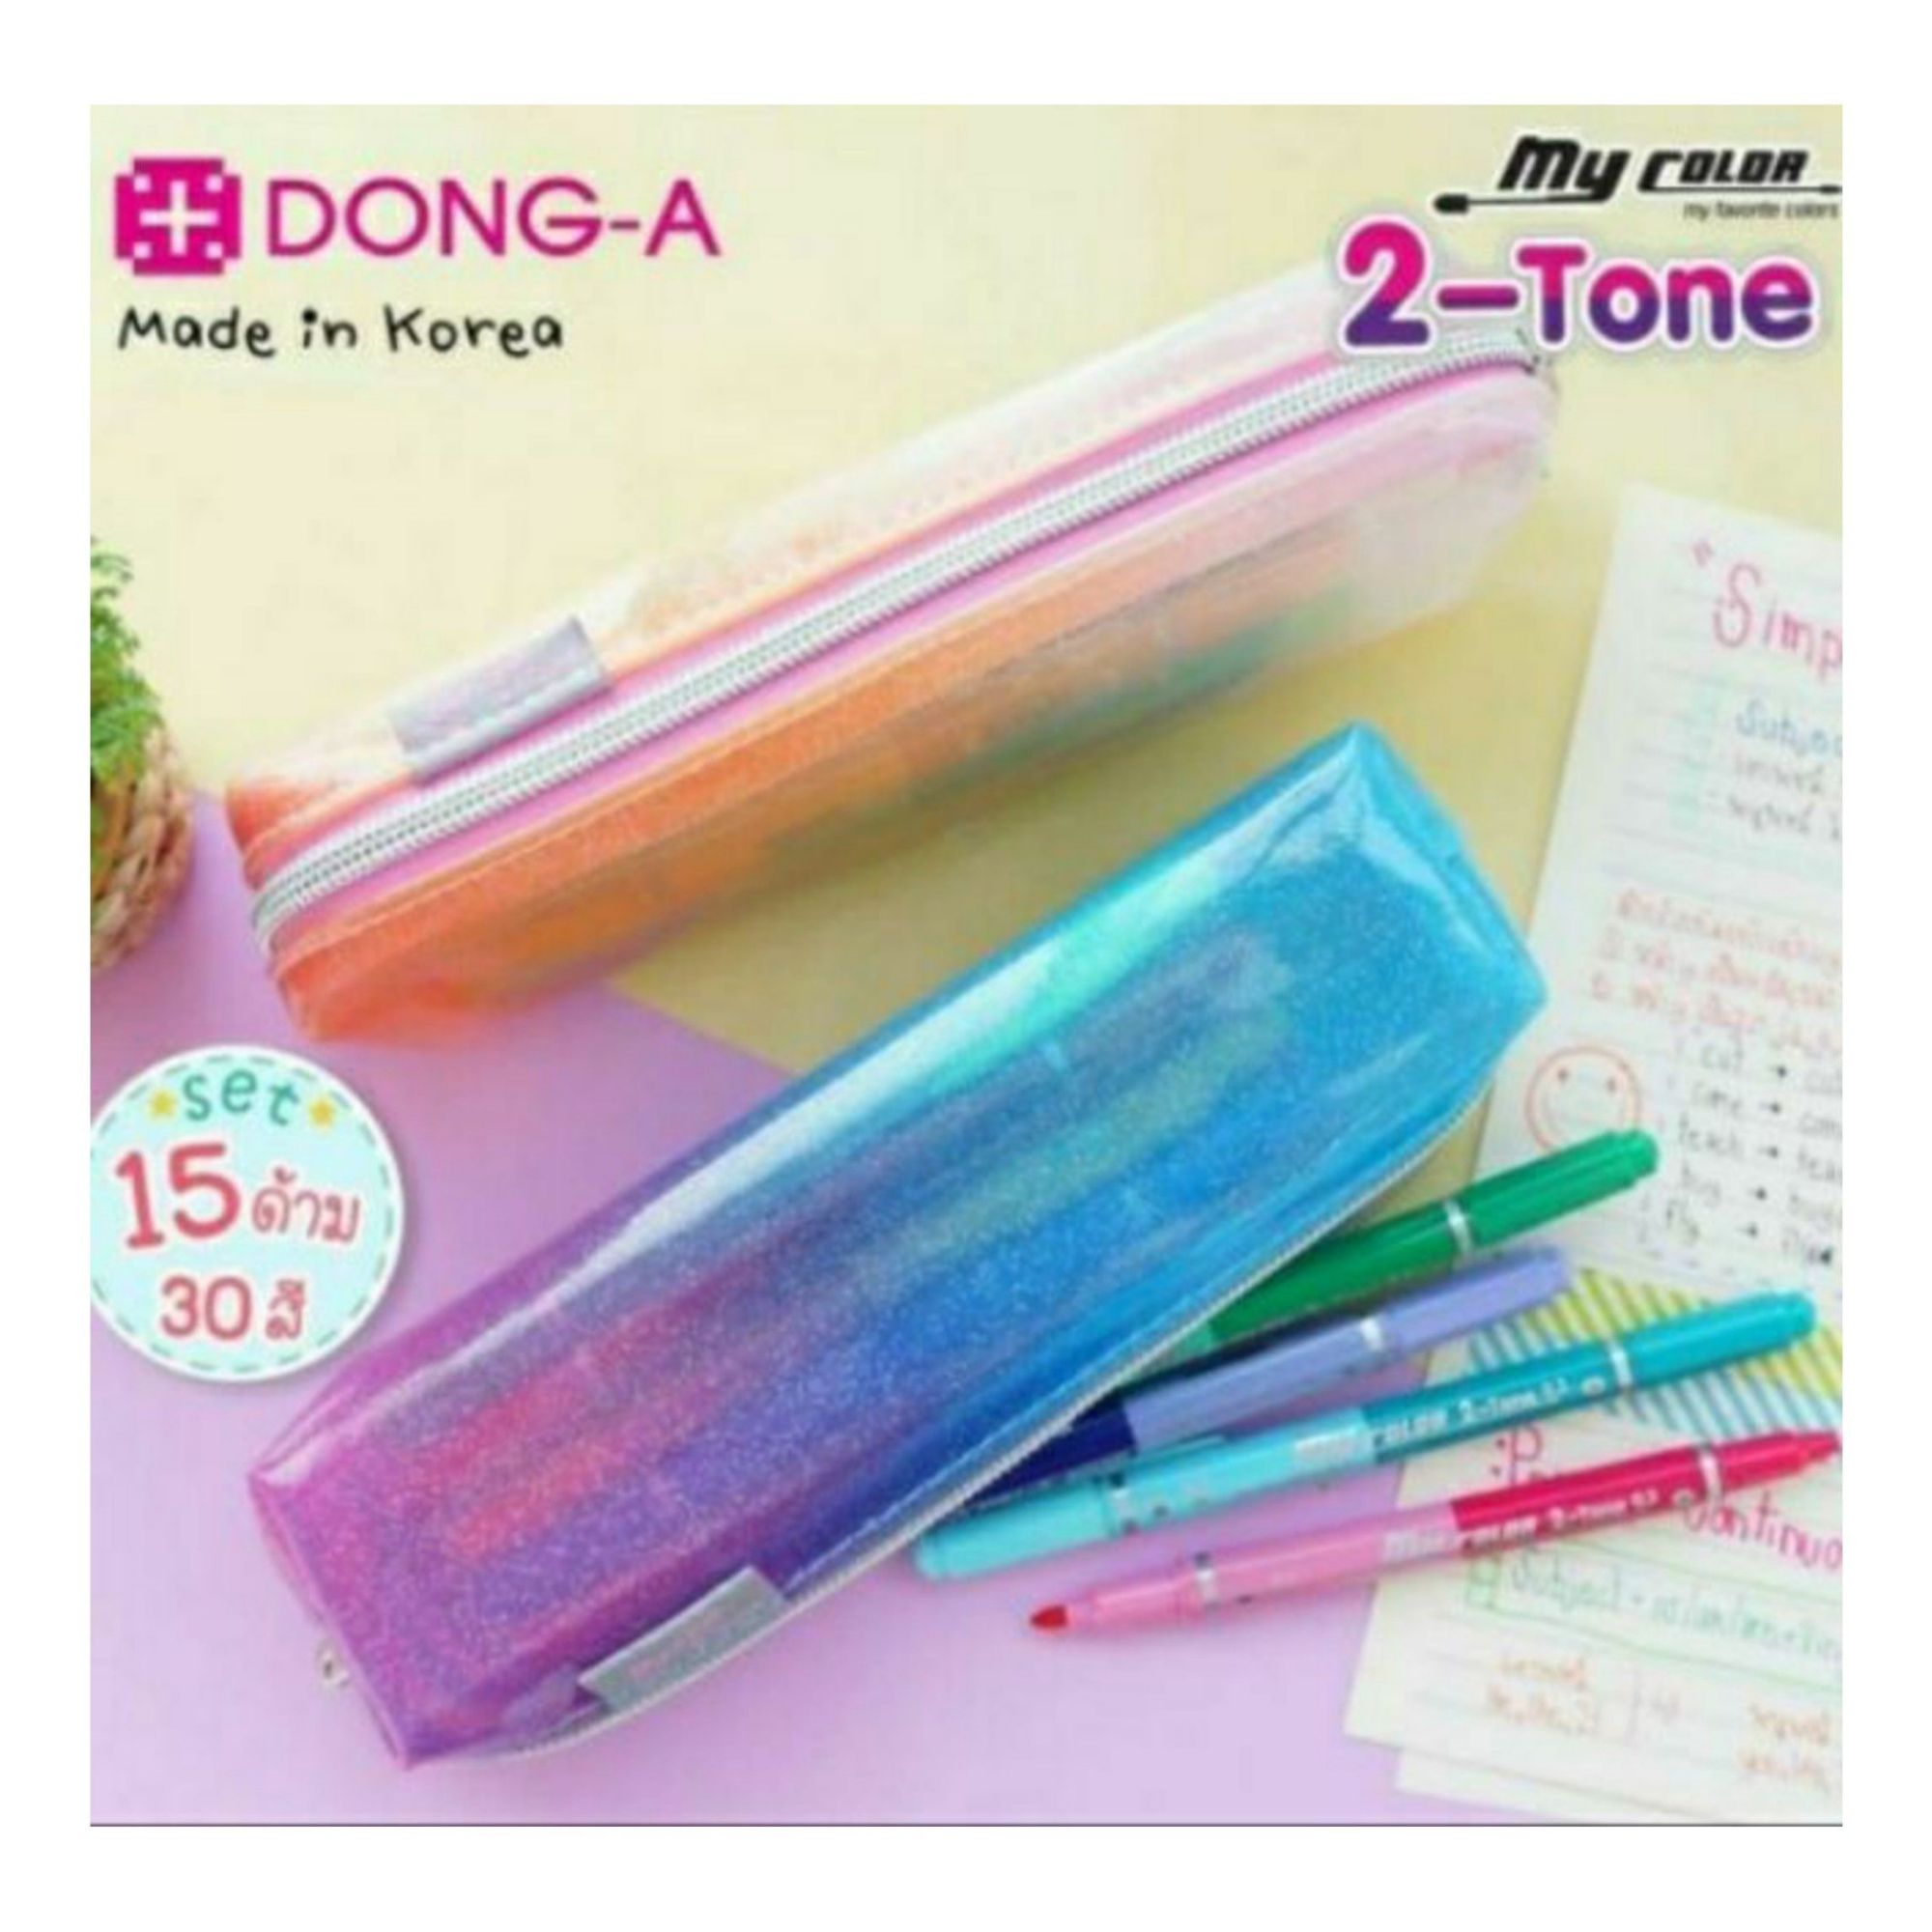 ปากกาสี My Color 2 Tone Dong-A cm37